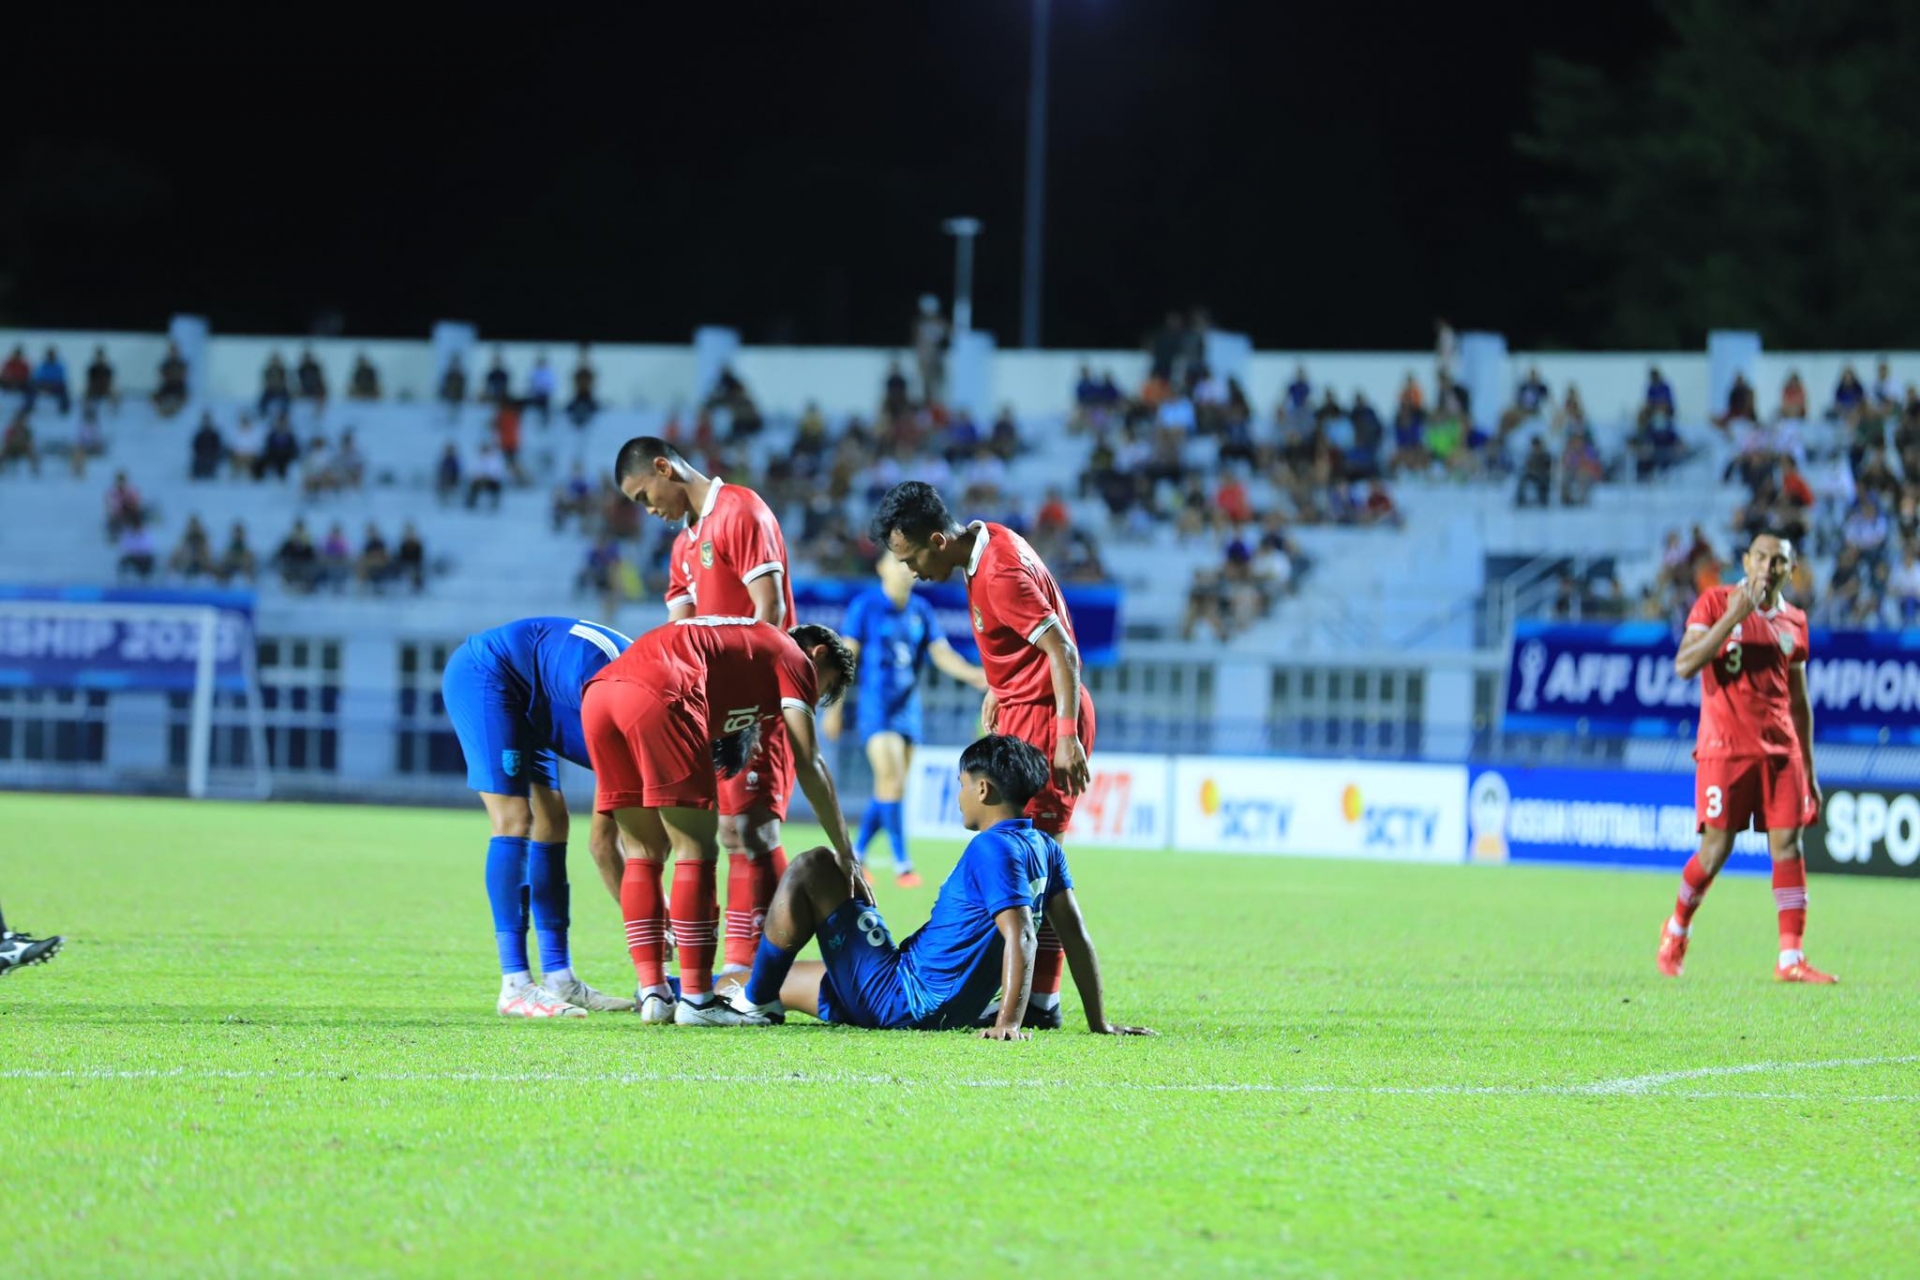 Trực tiếp U23 Thái Lan 1-3 U23 Indonesia: Quyết tâm ghi thêm bàn 317807